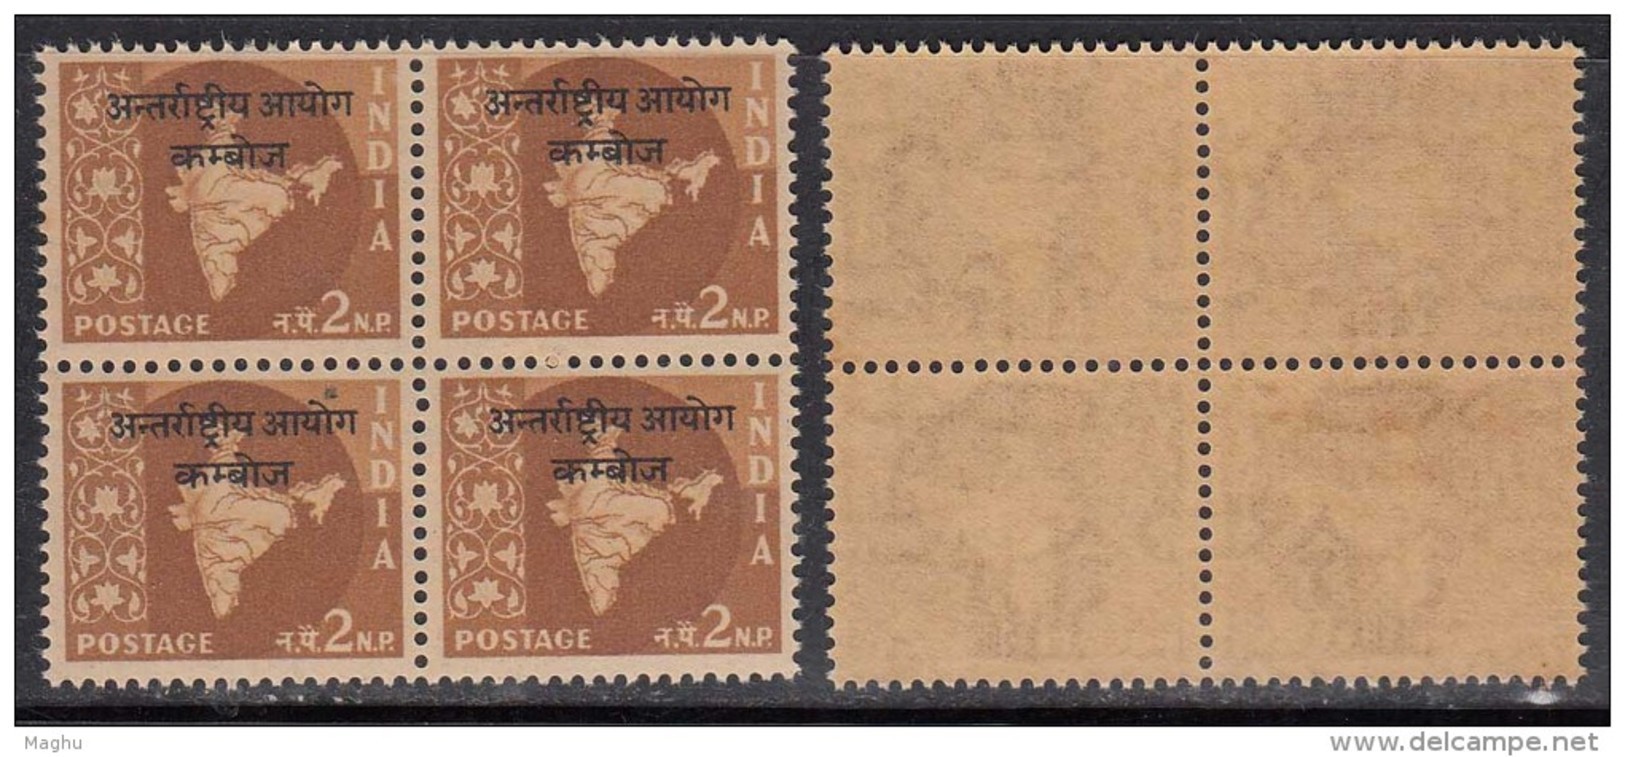 India MNH 1962, Ovpt. Cambodia On 2np Map Series, Ashokan Watermark, Block Of 4, - Militärpostmarken